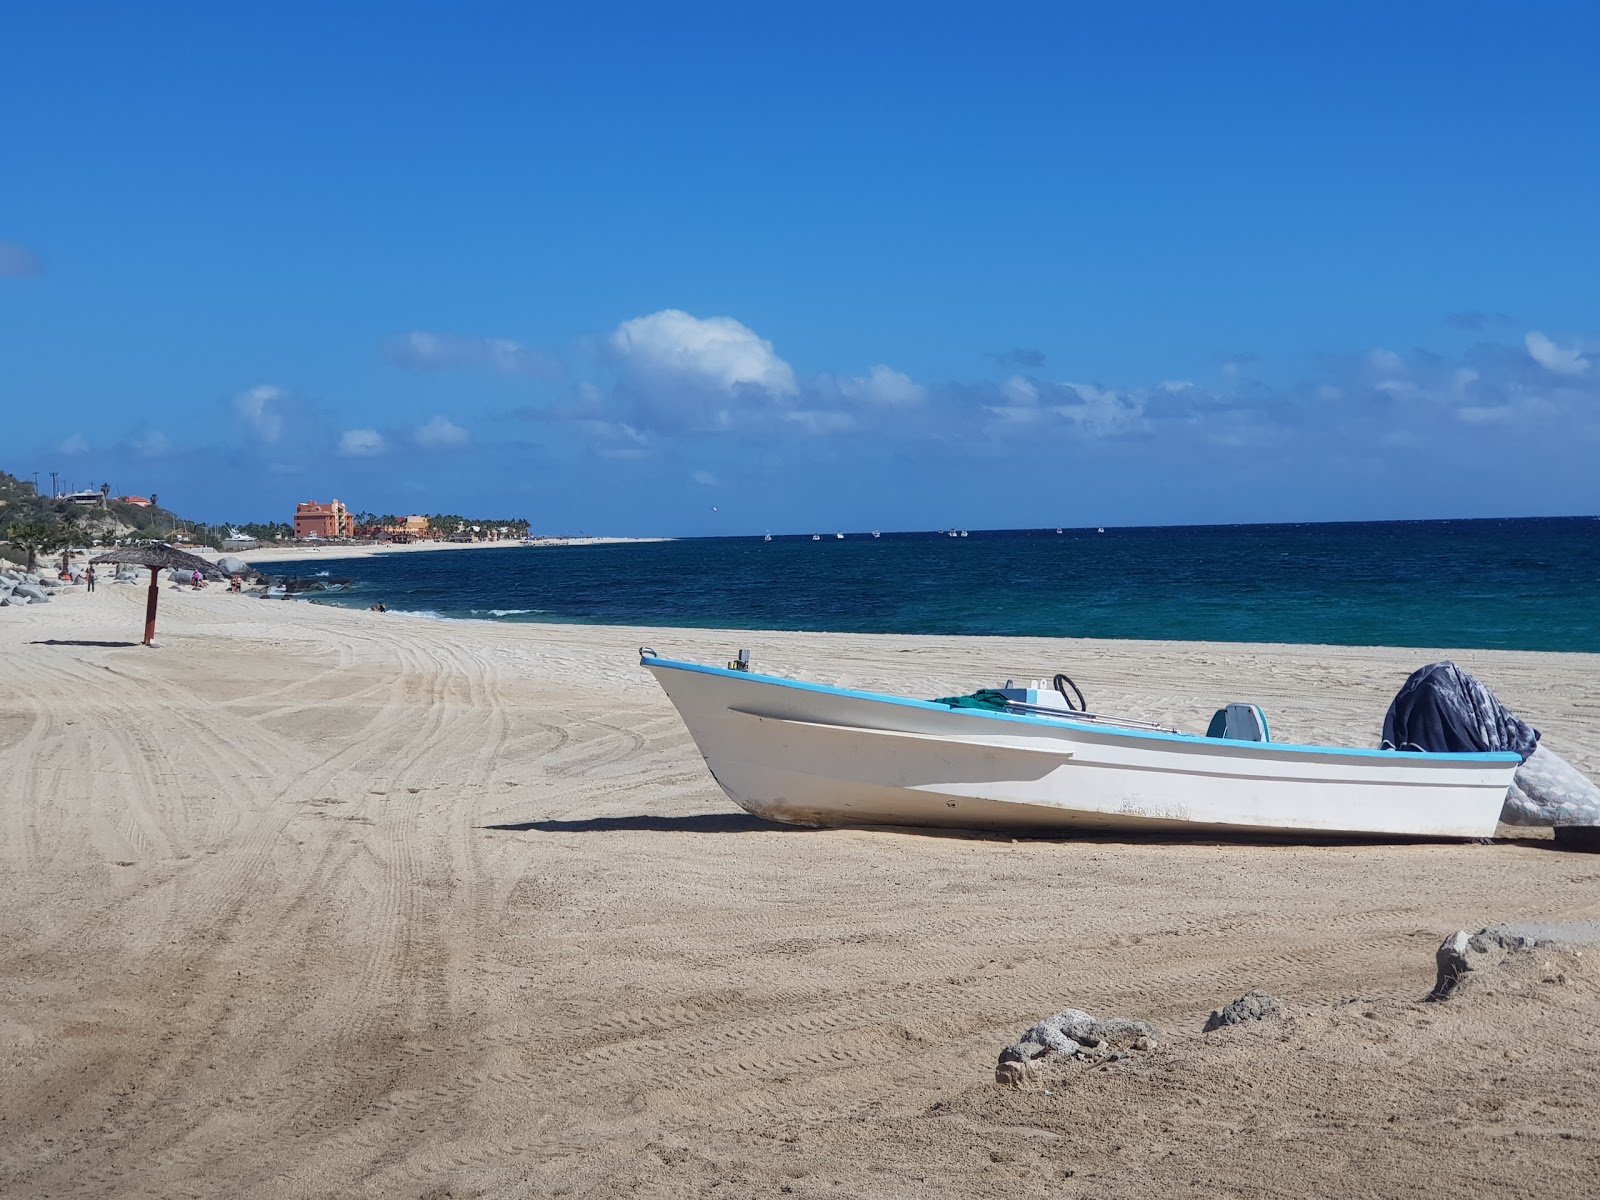 Playa buena vista'in fotoğrafı ve yerleşim